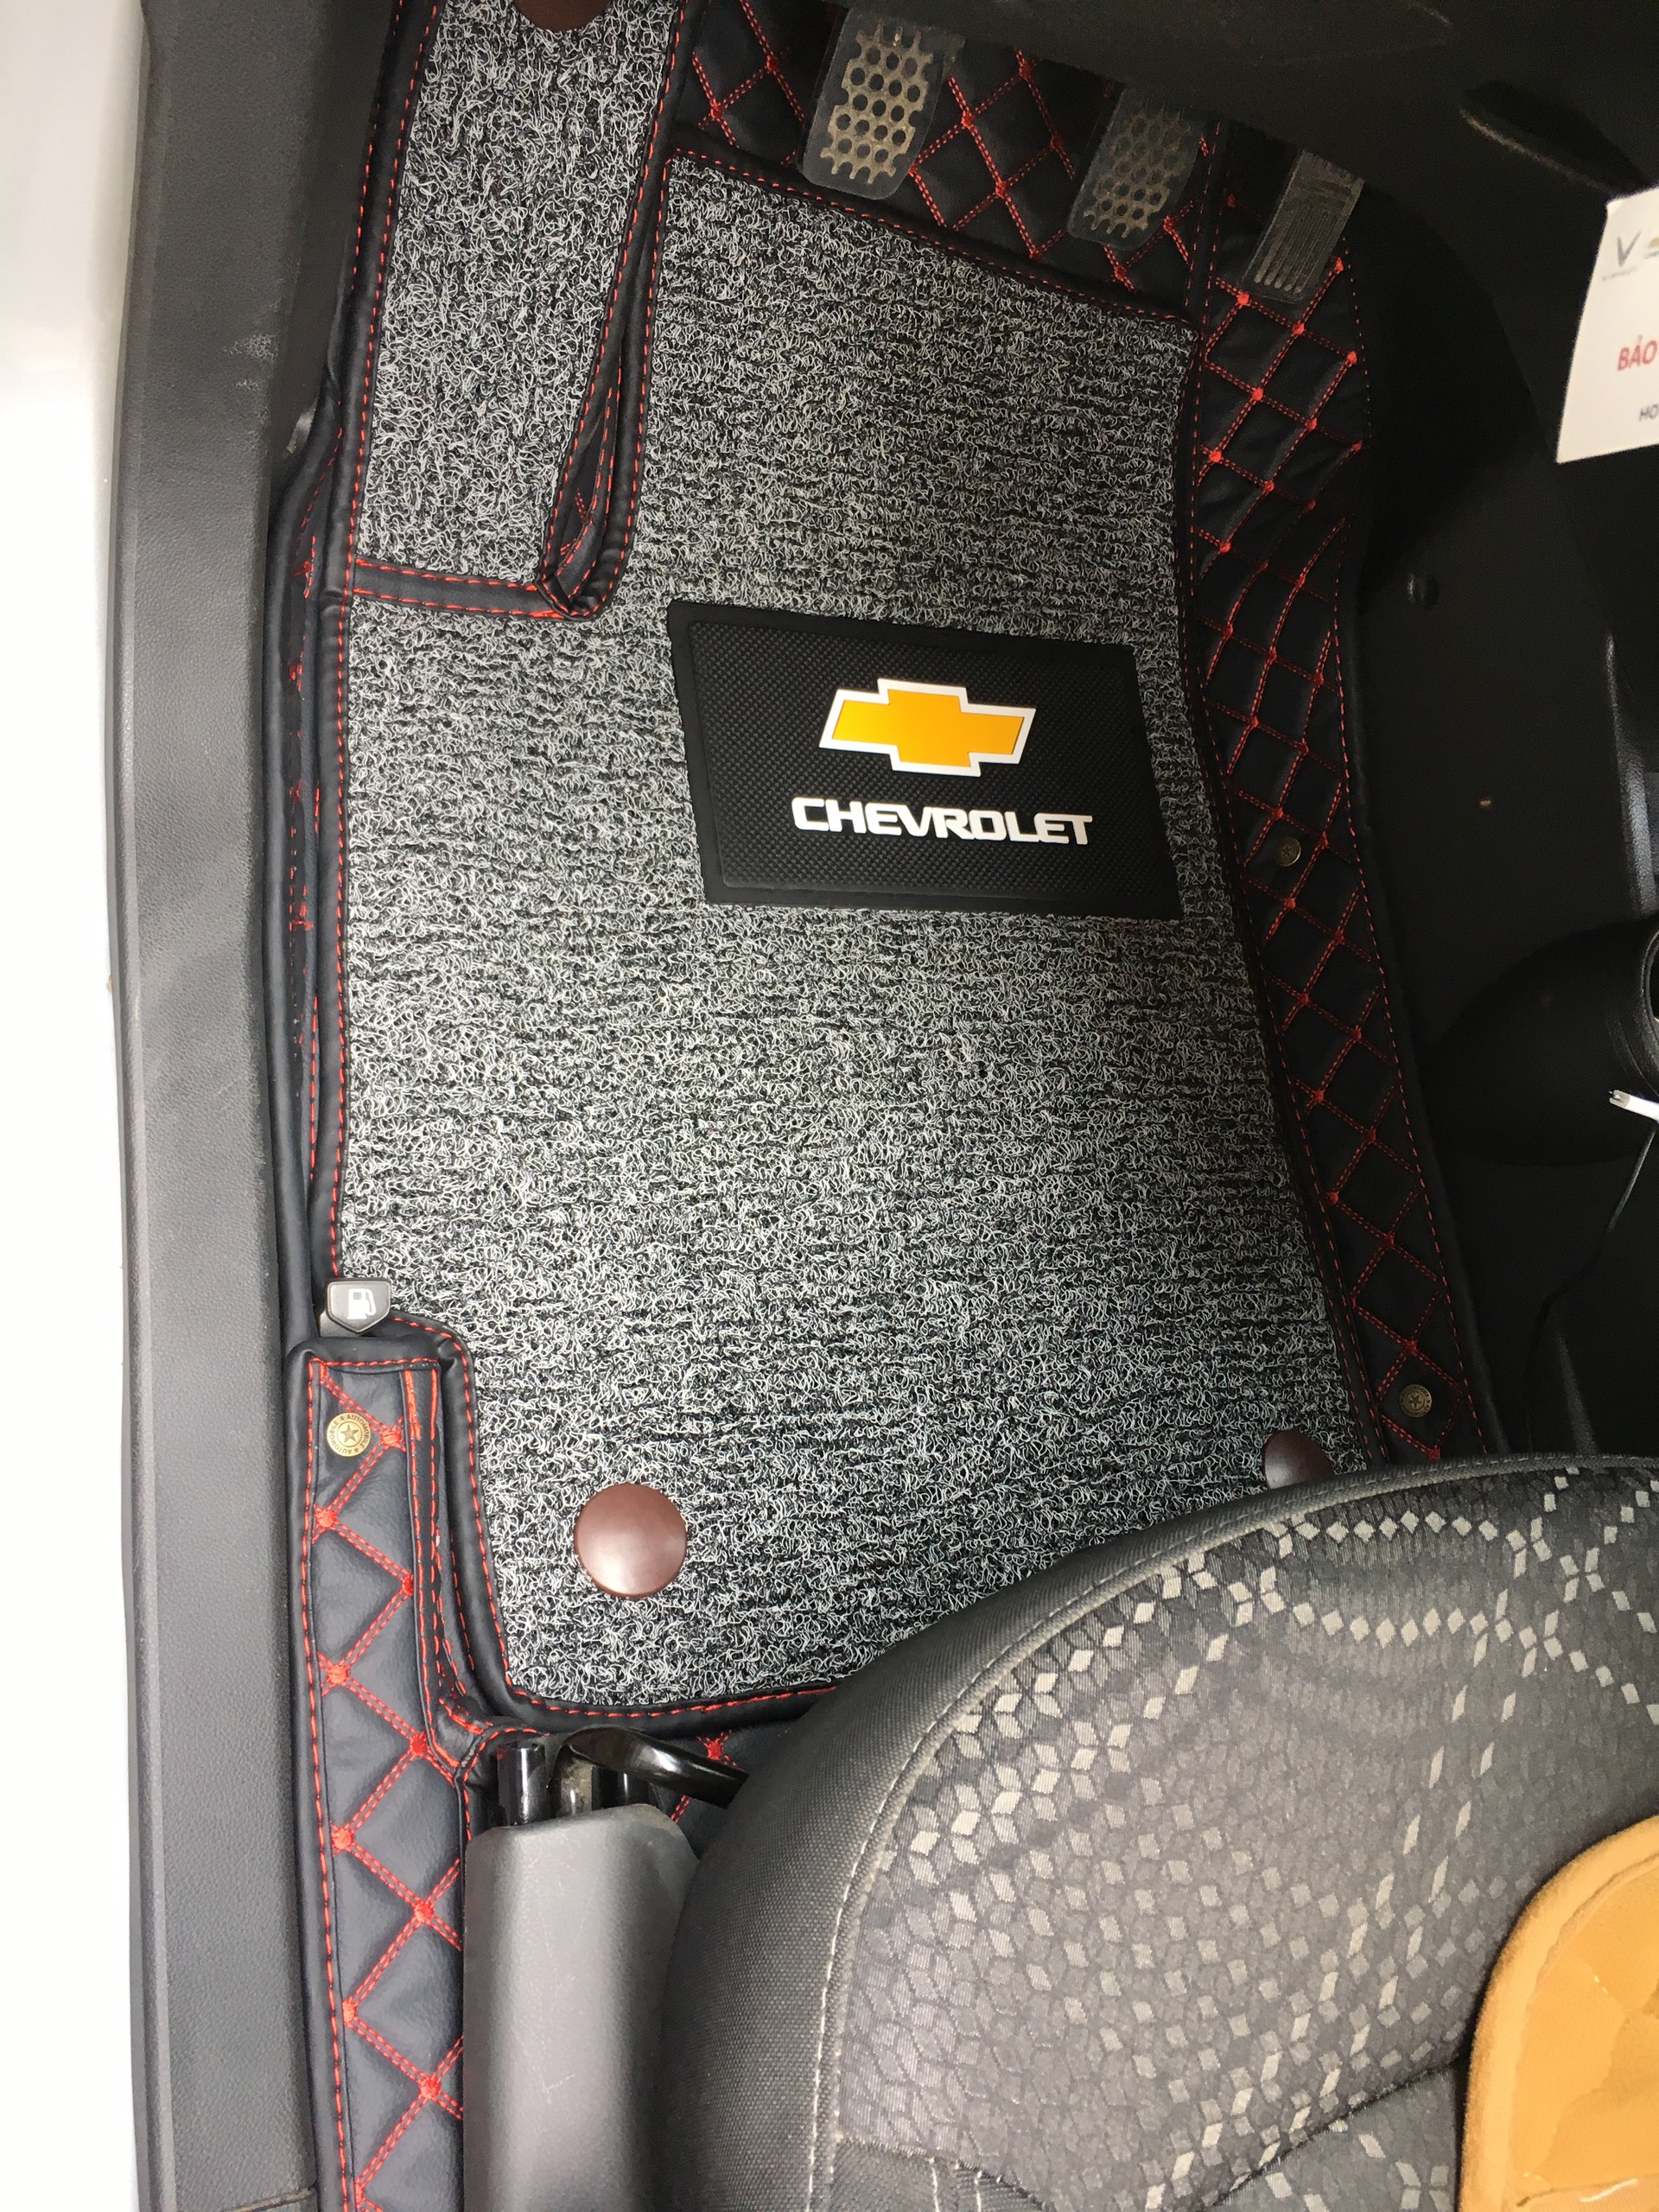 Thảm sàn ô tô 6D dành cho xe Chevrolet Spark 2018 da Thường màu T2.2 + R3 hình ảnh thật chụp bằng điện thoại không chỉnh sửa có video hướng dẫn lắp đặt tại nhà